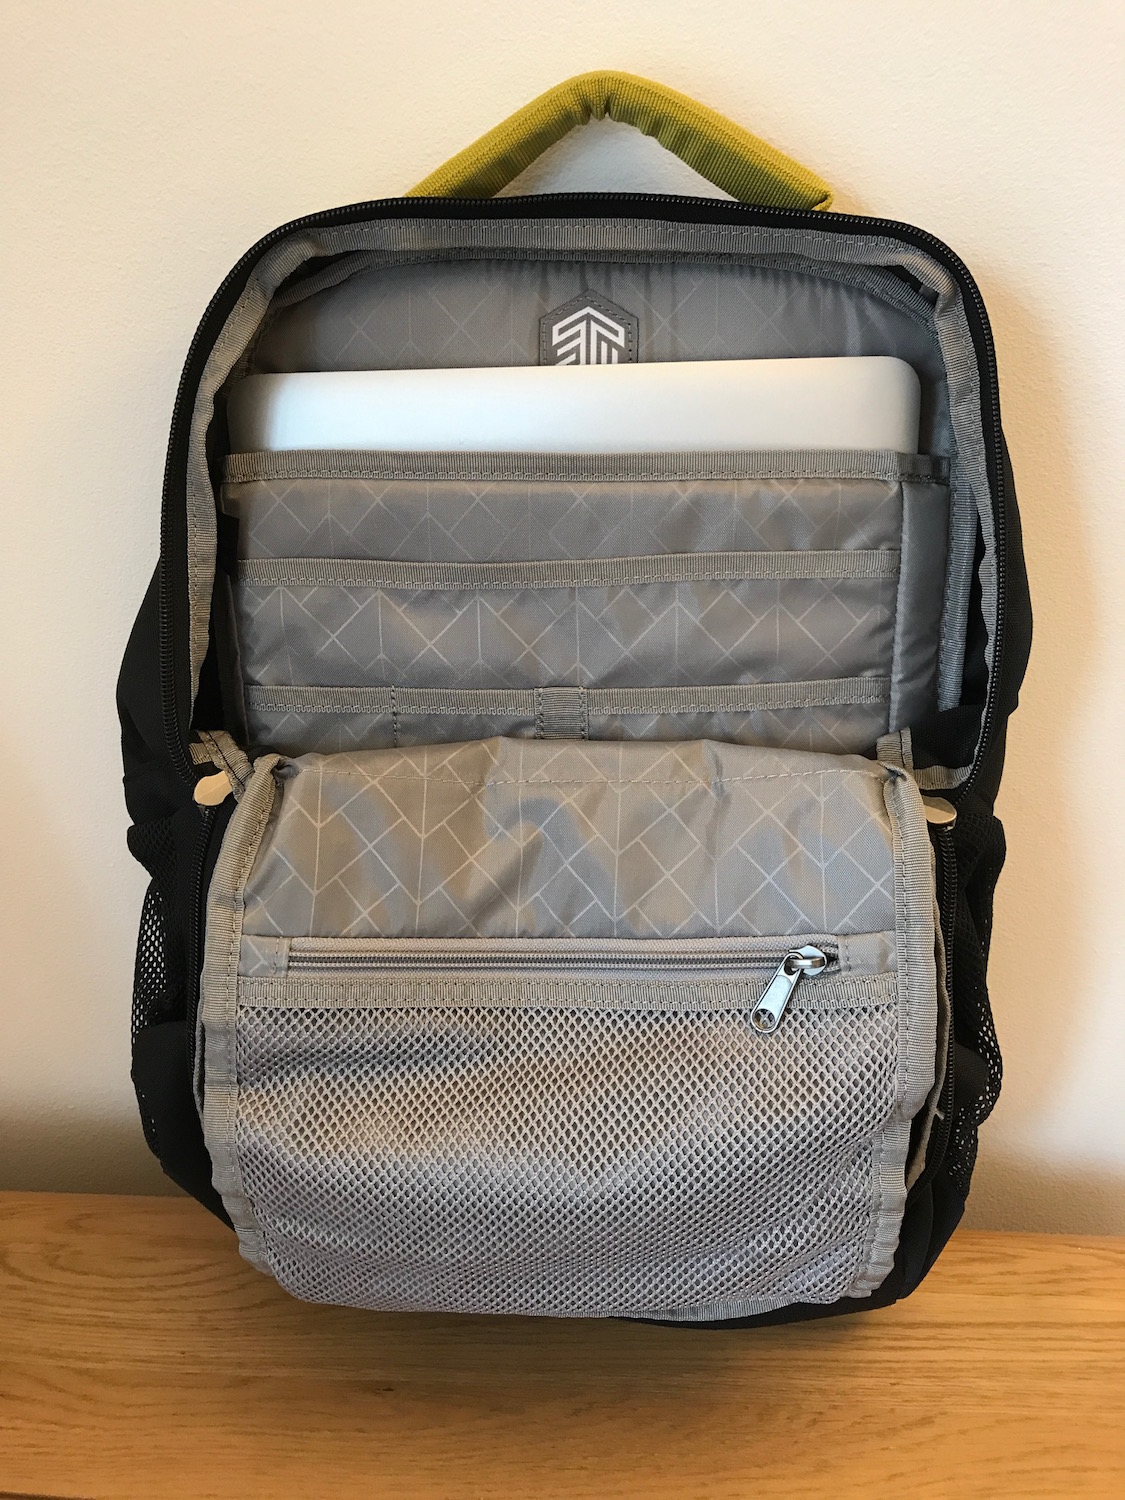 STM Saga backpack - inside